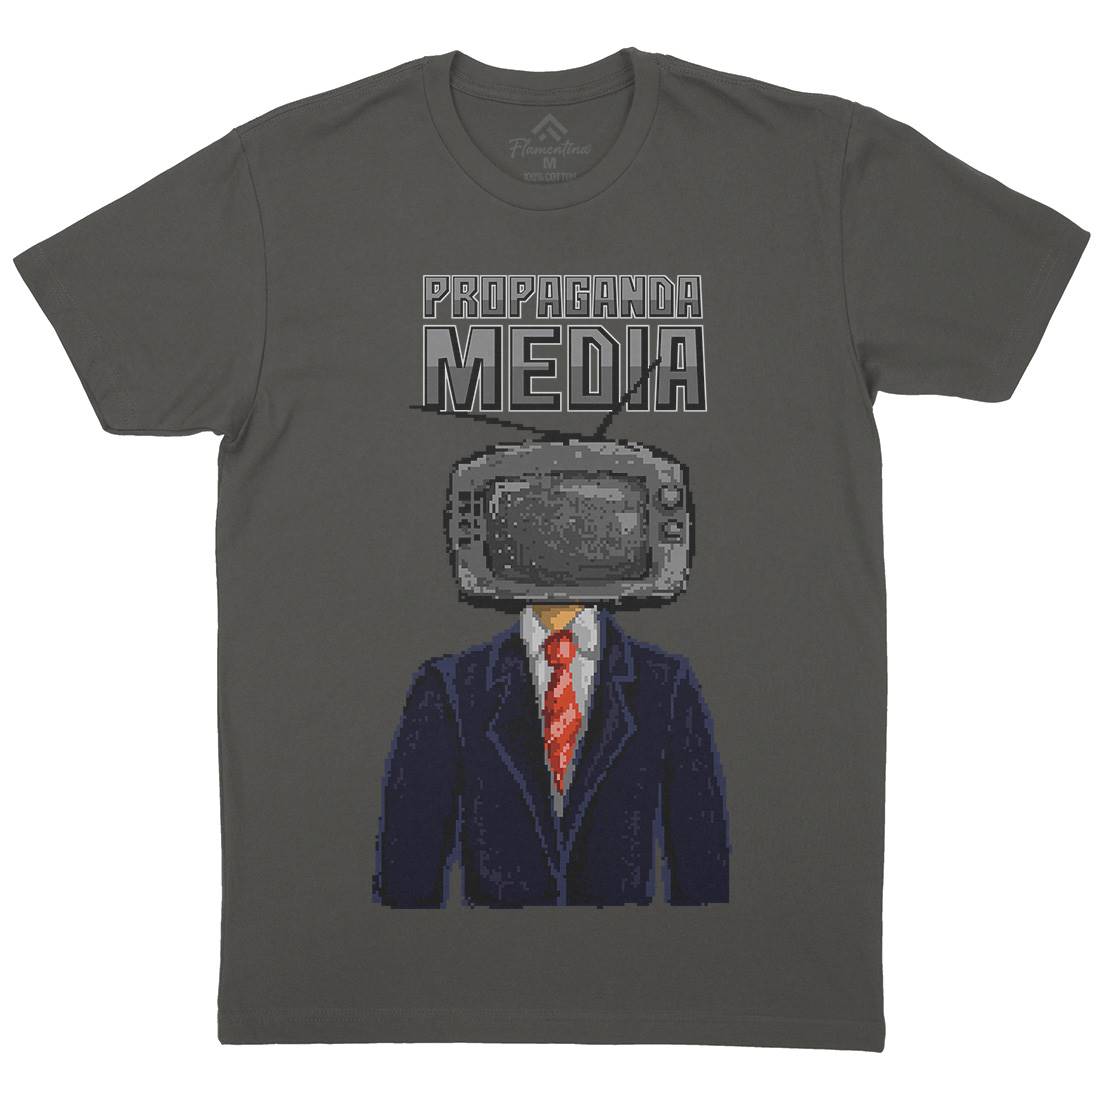 Propaganda Mens Crew Neck T-Shirt Illuminati B948